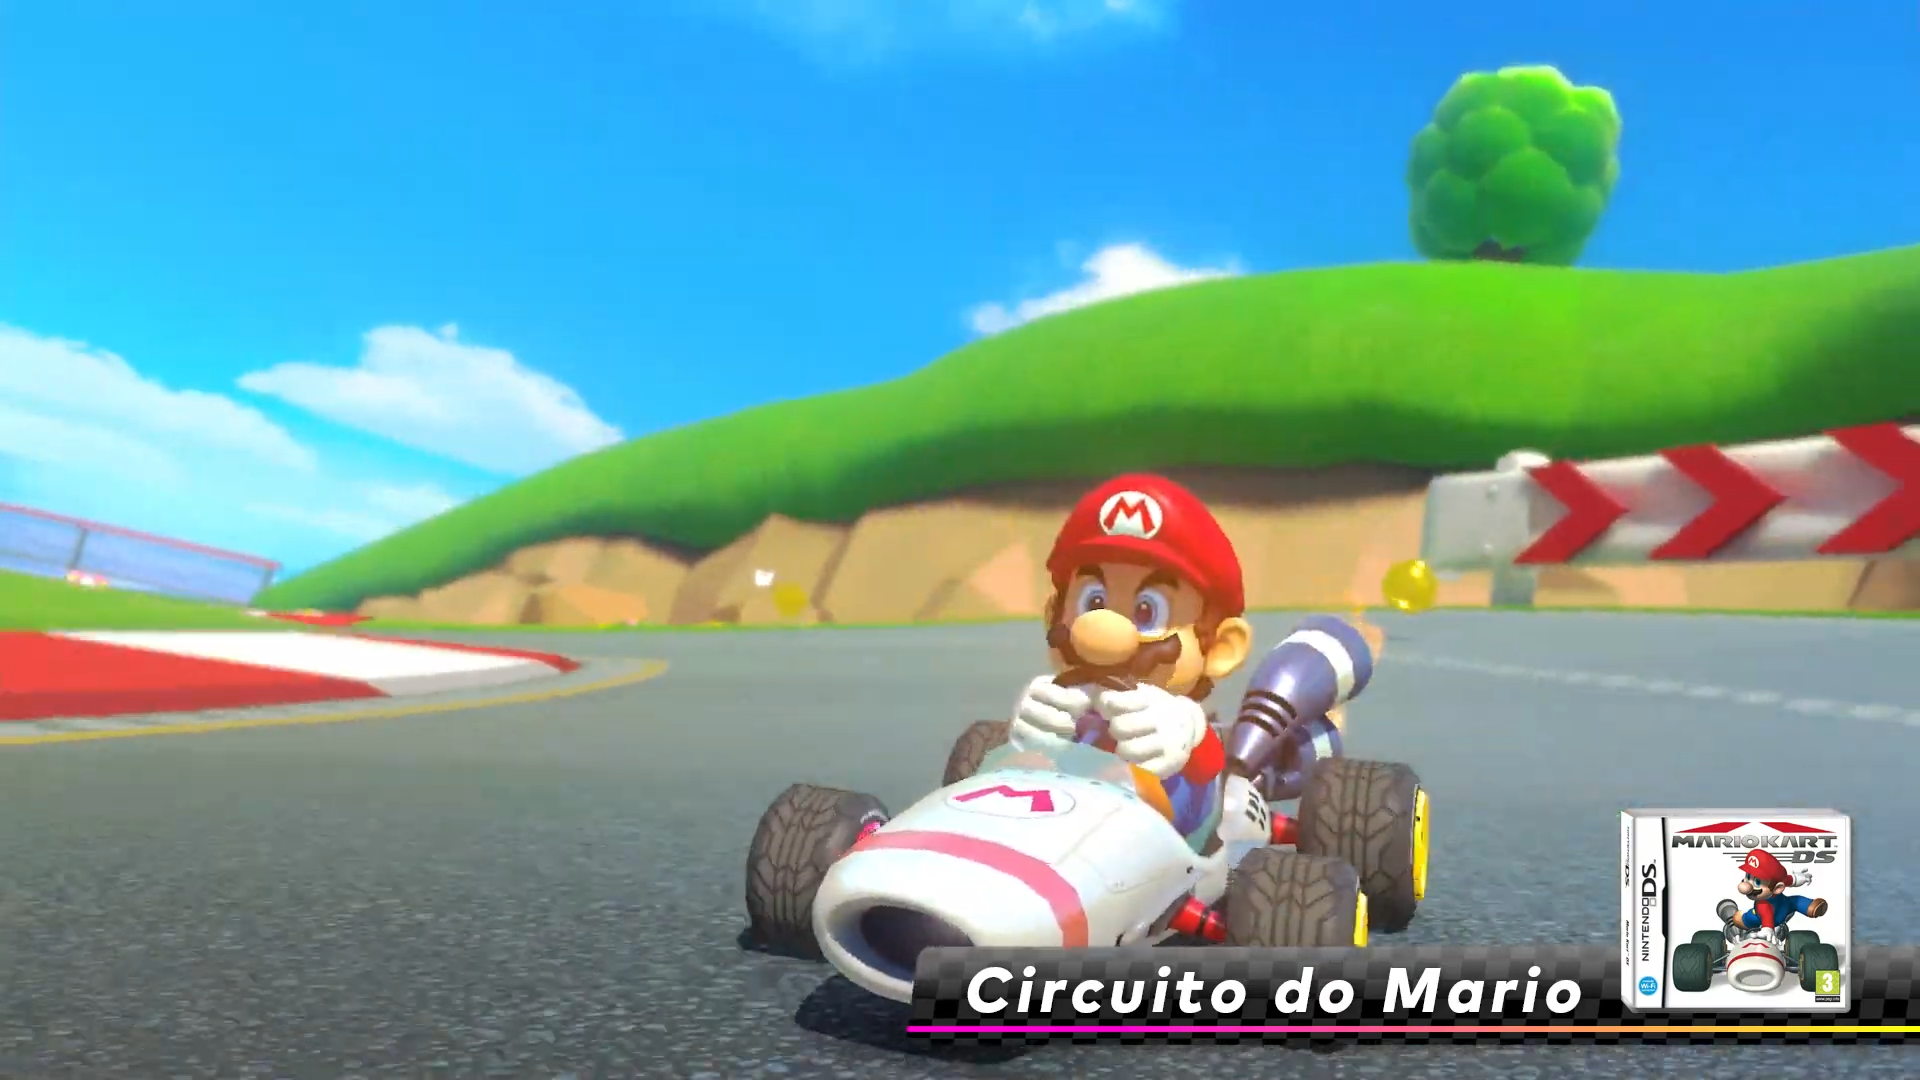 Em dia de “MAR10” já pode jogar nas novas pistas de Mario Kart 8 Deluxe -  Multimédia - SAPO Tek